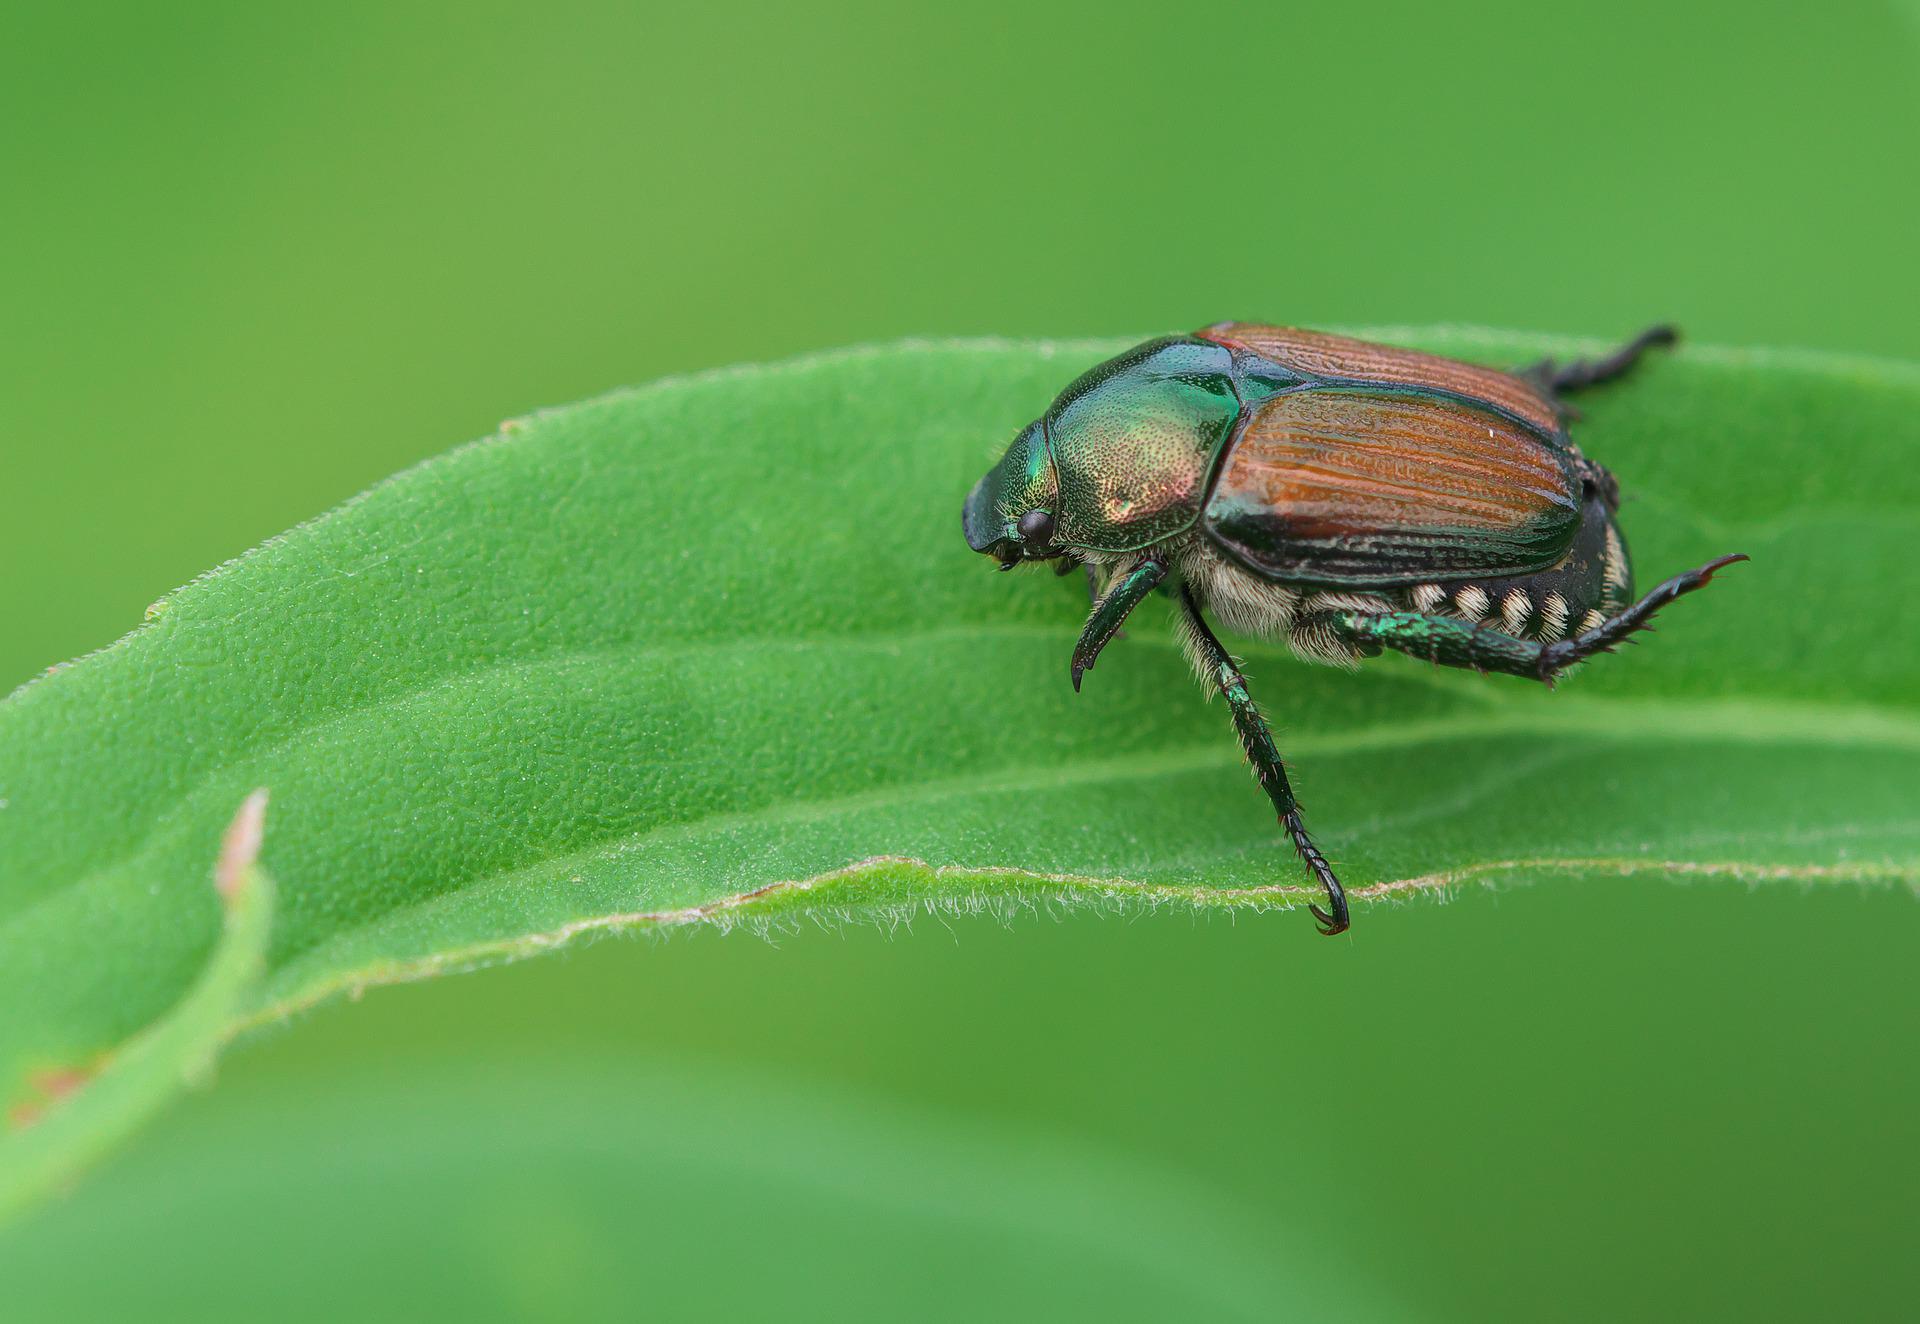 A Japanese beetle on a leaf